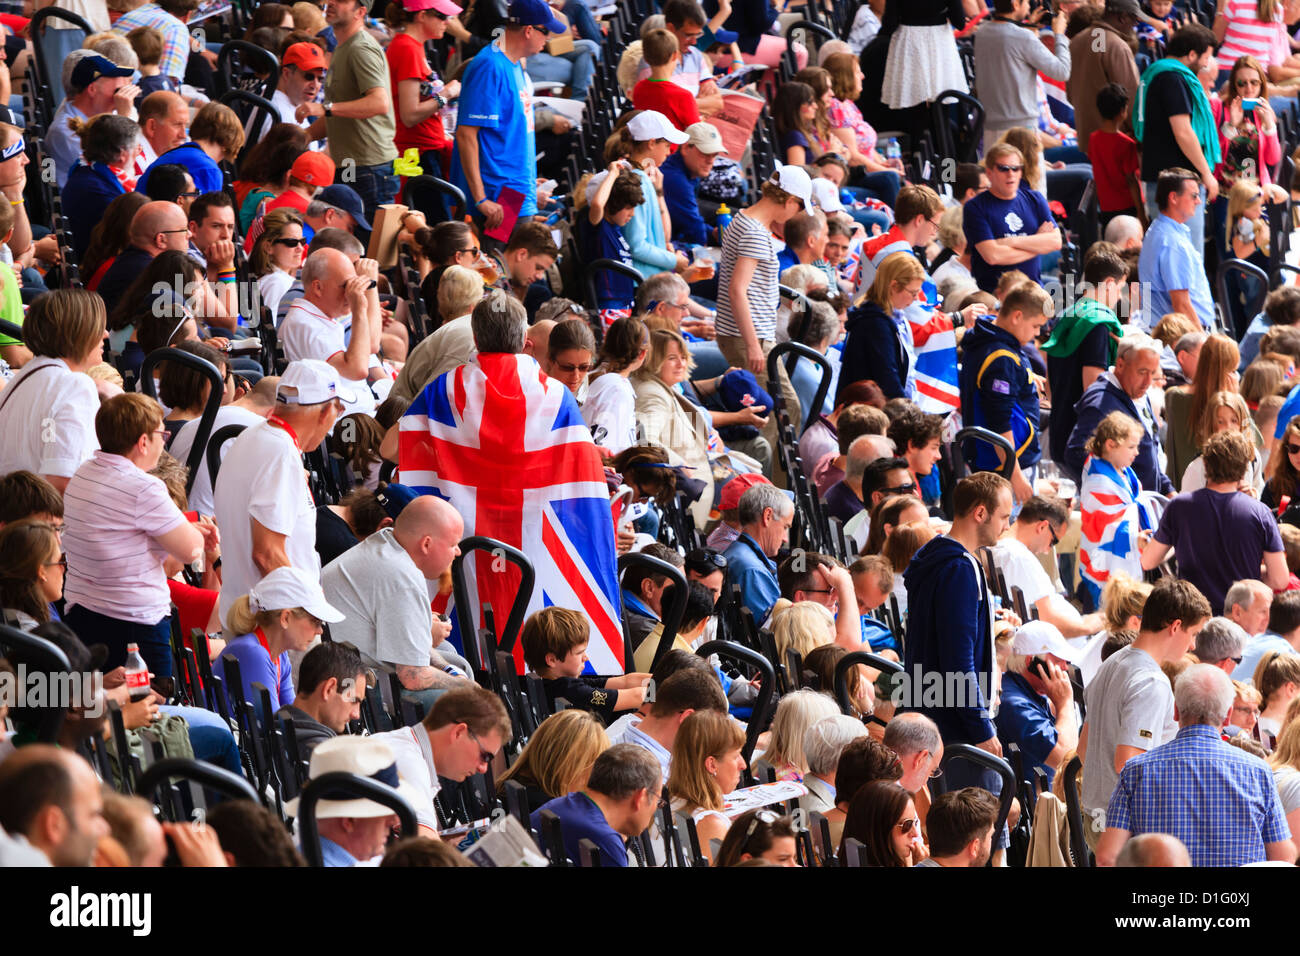 La foule des spectateurs avec des drapeaux de l'Union dans une arène de sports, Londres, Angleterre, Royaume-Uni, Europe Banque D'Images